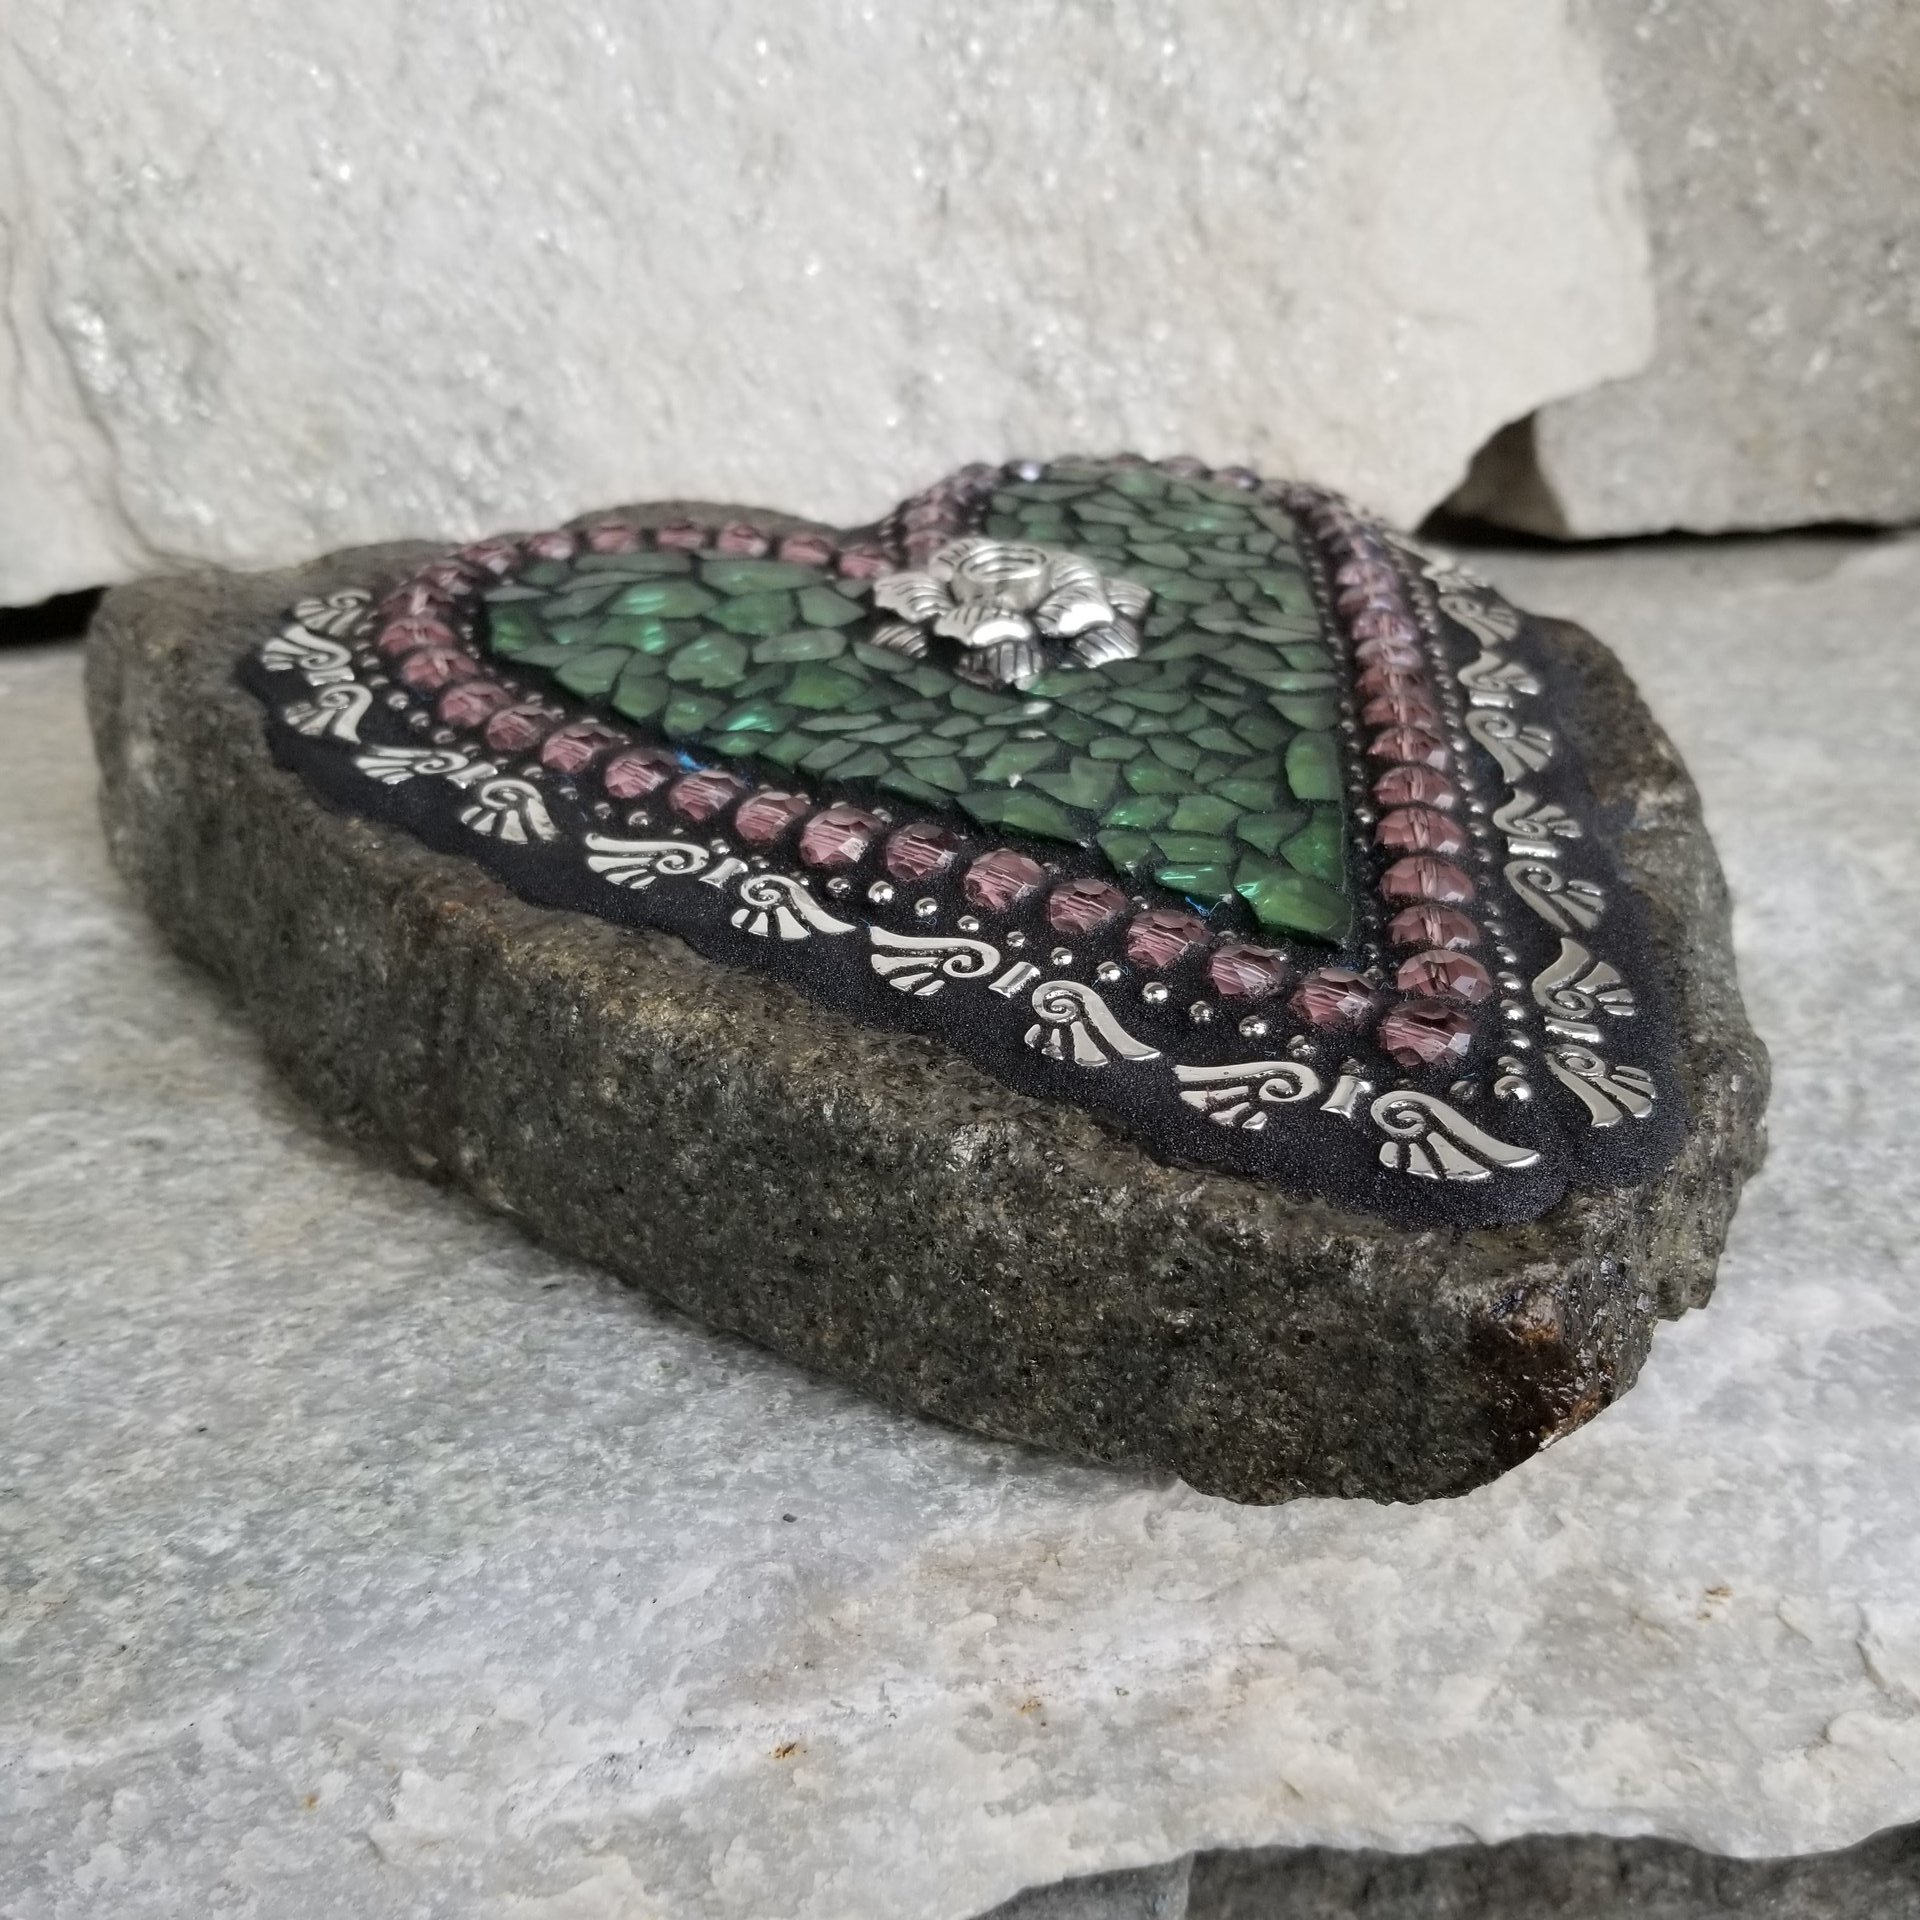 Green Heart Mosaic / Garden Stone, Rose